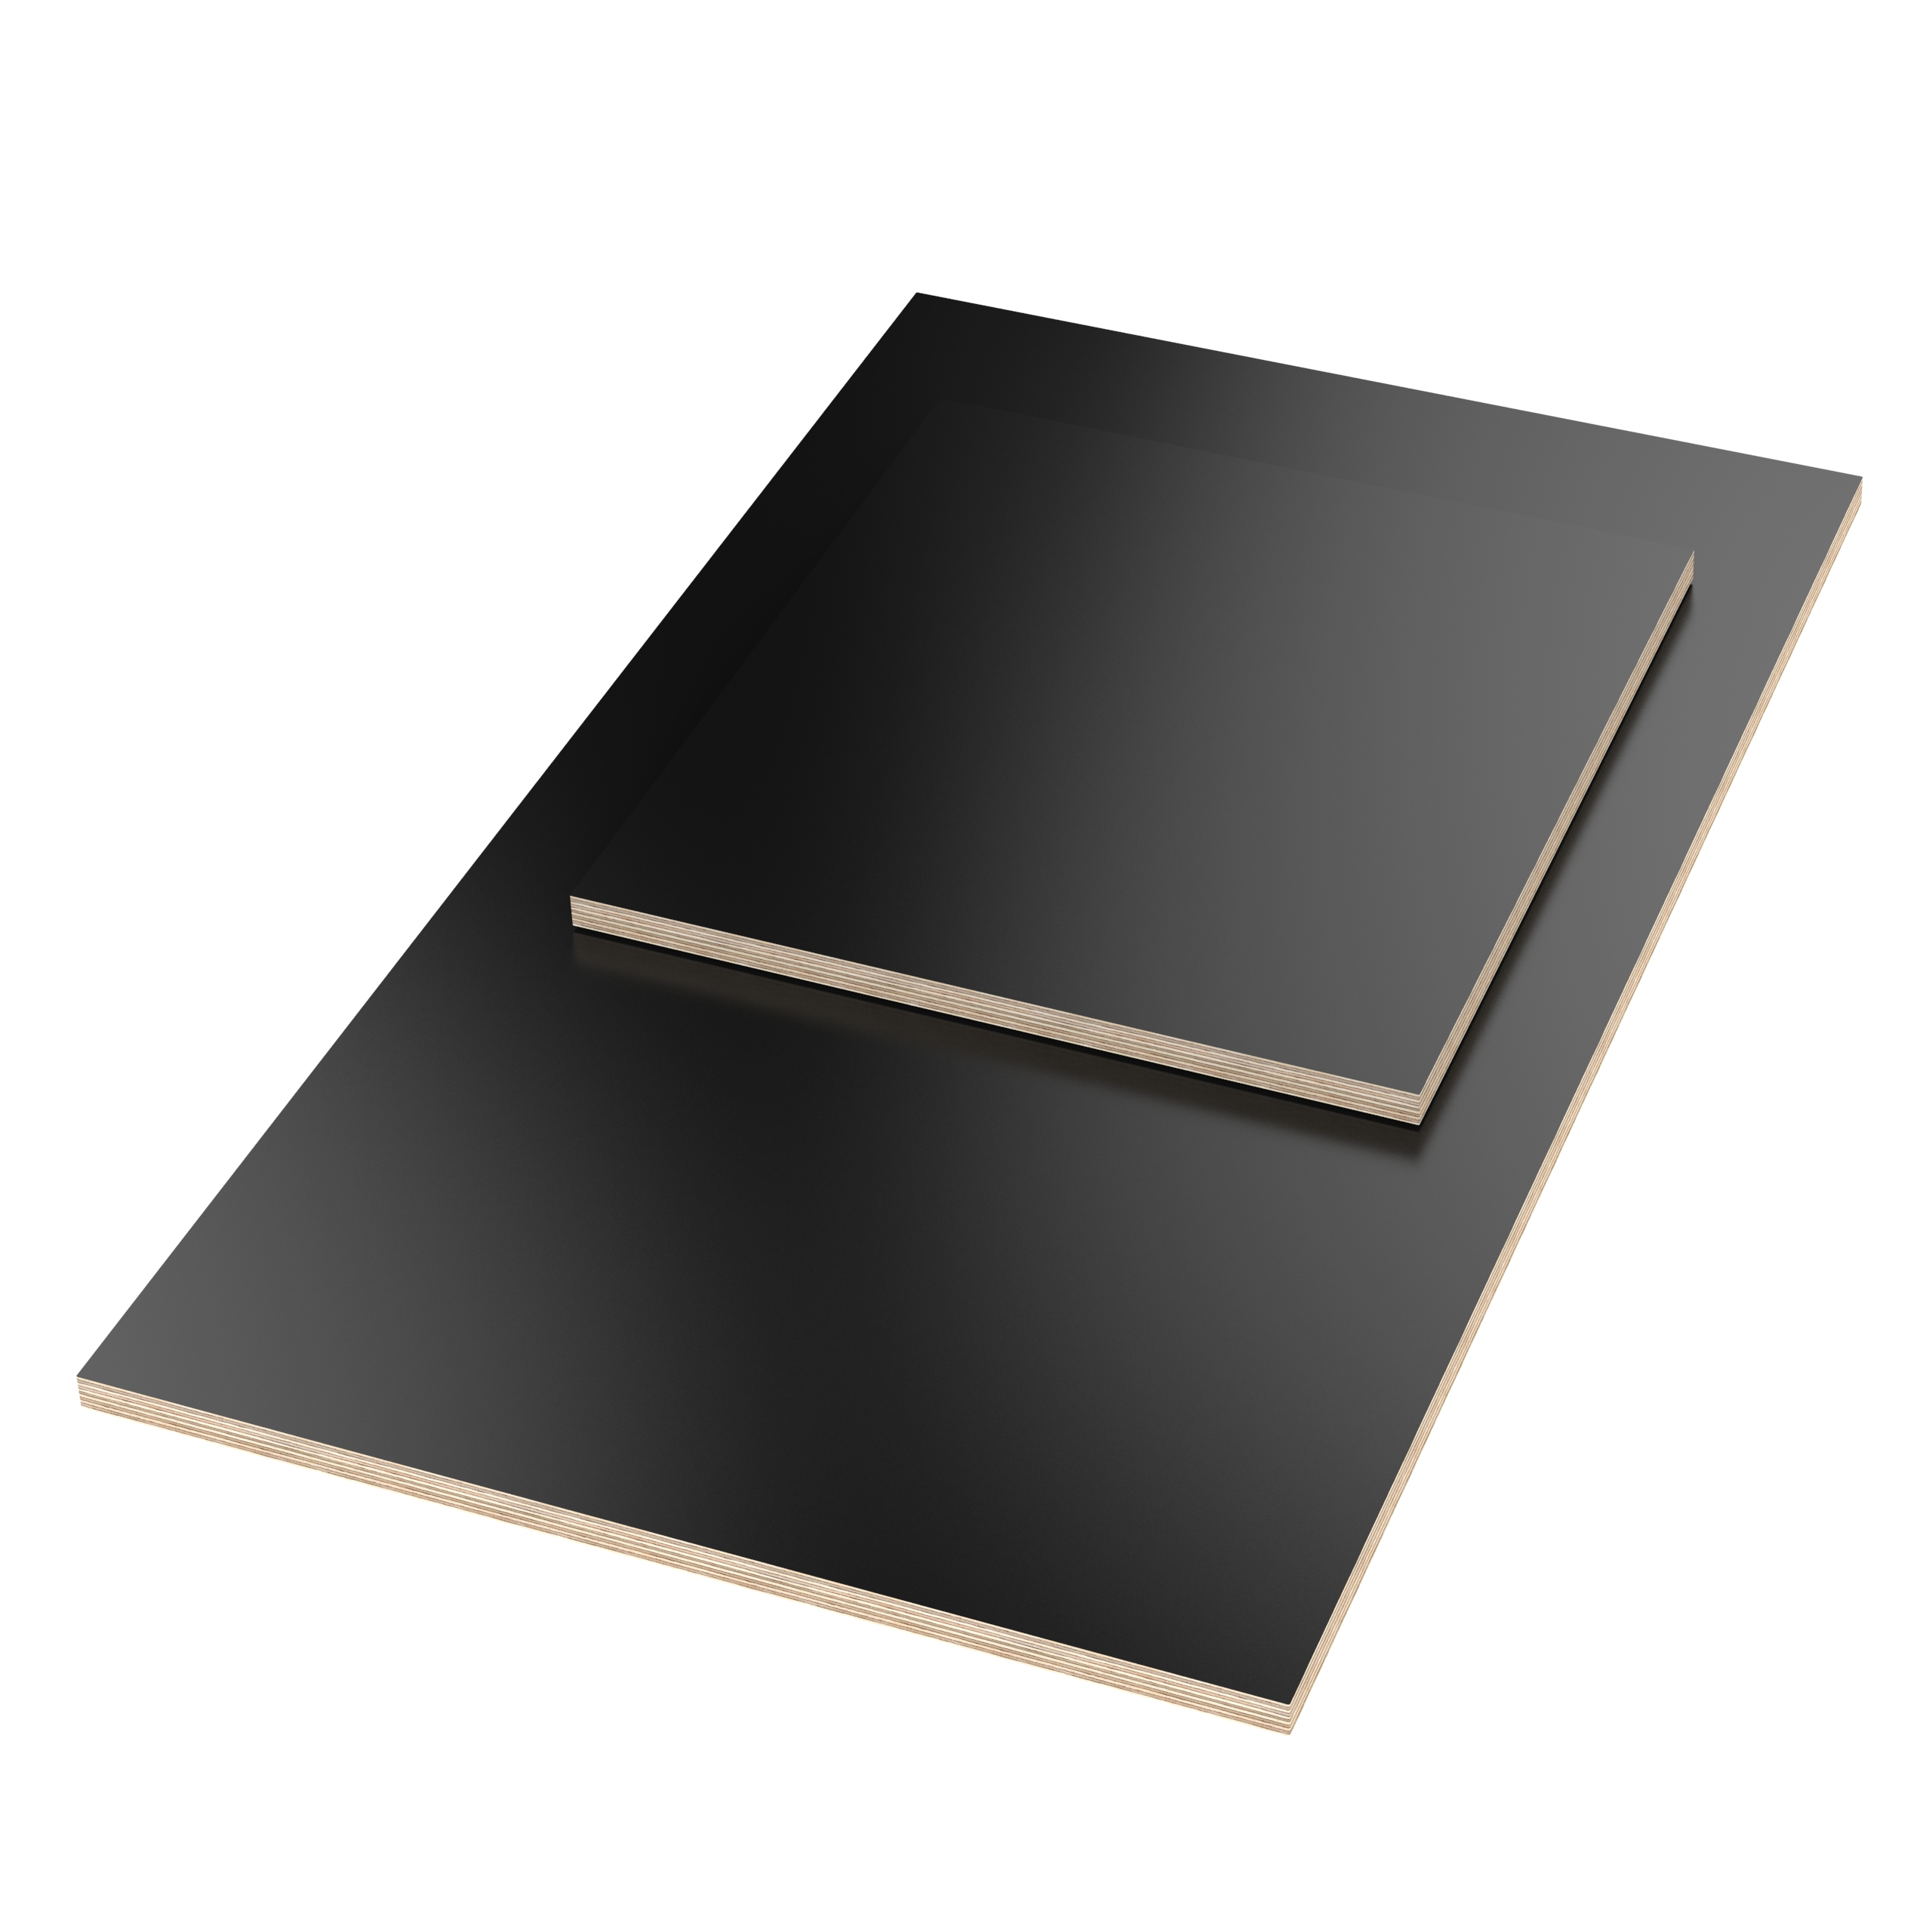 AUPROTEC Tischplatte 18mm grau Zuschnitt Multiplexplatte melaminbeschichtet 